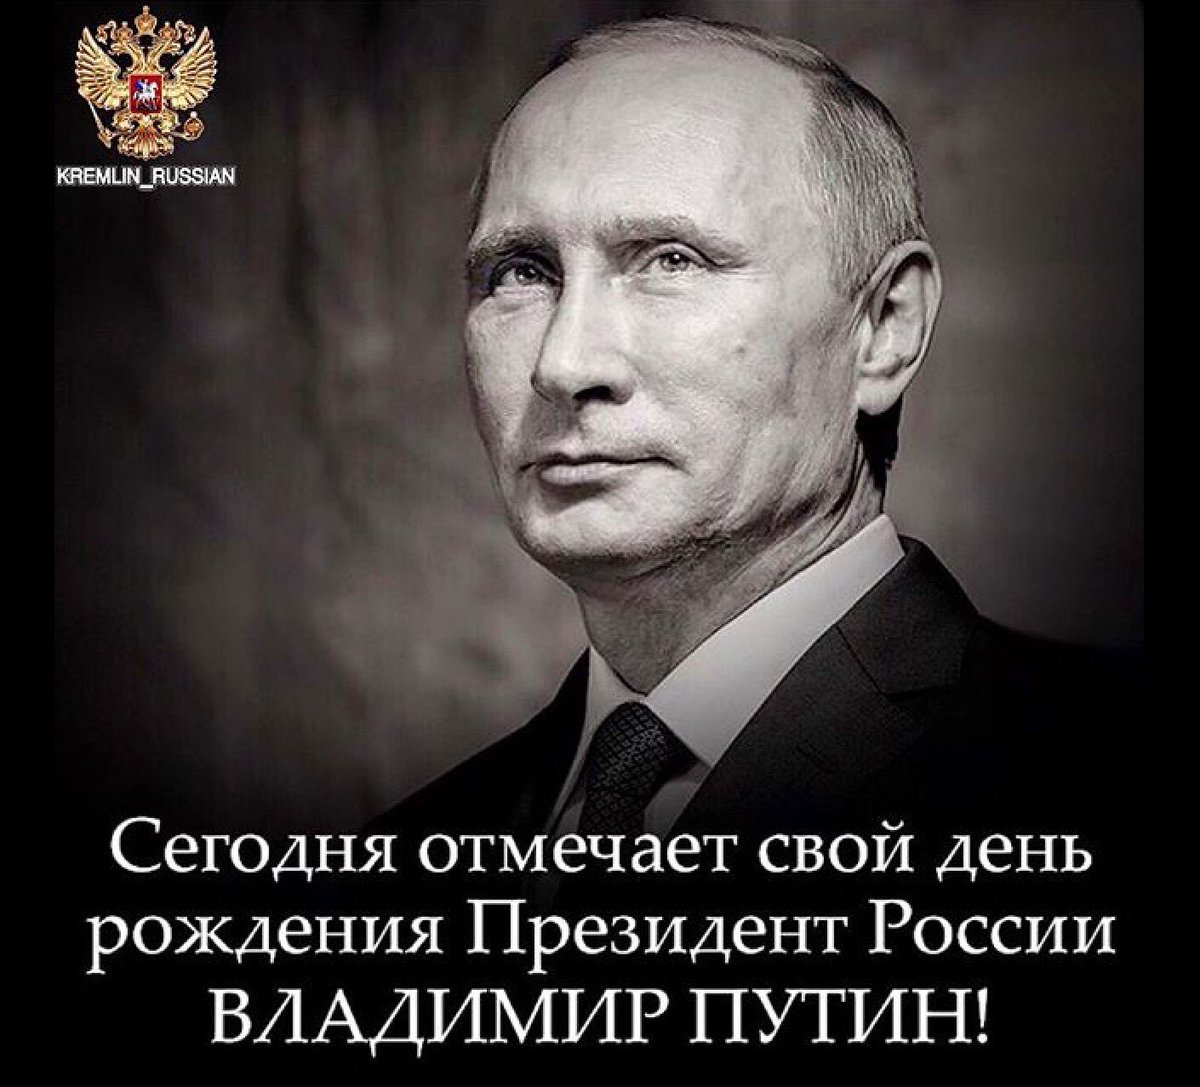 Стихи В Поздравлении Путина